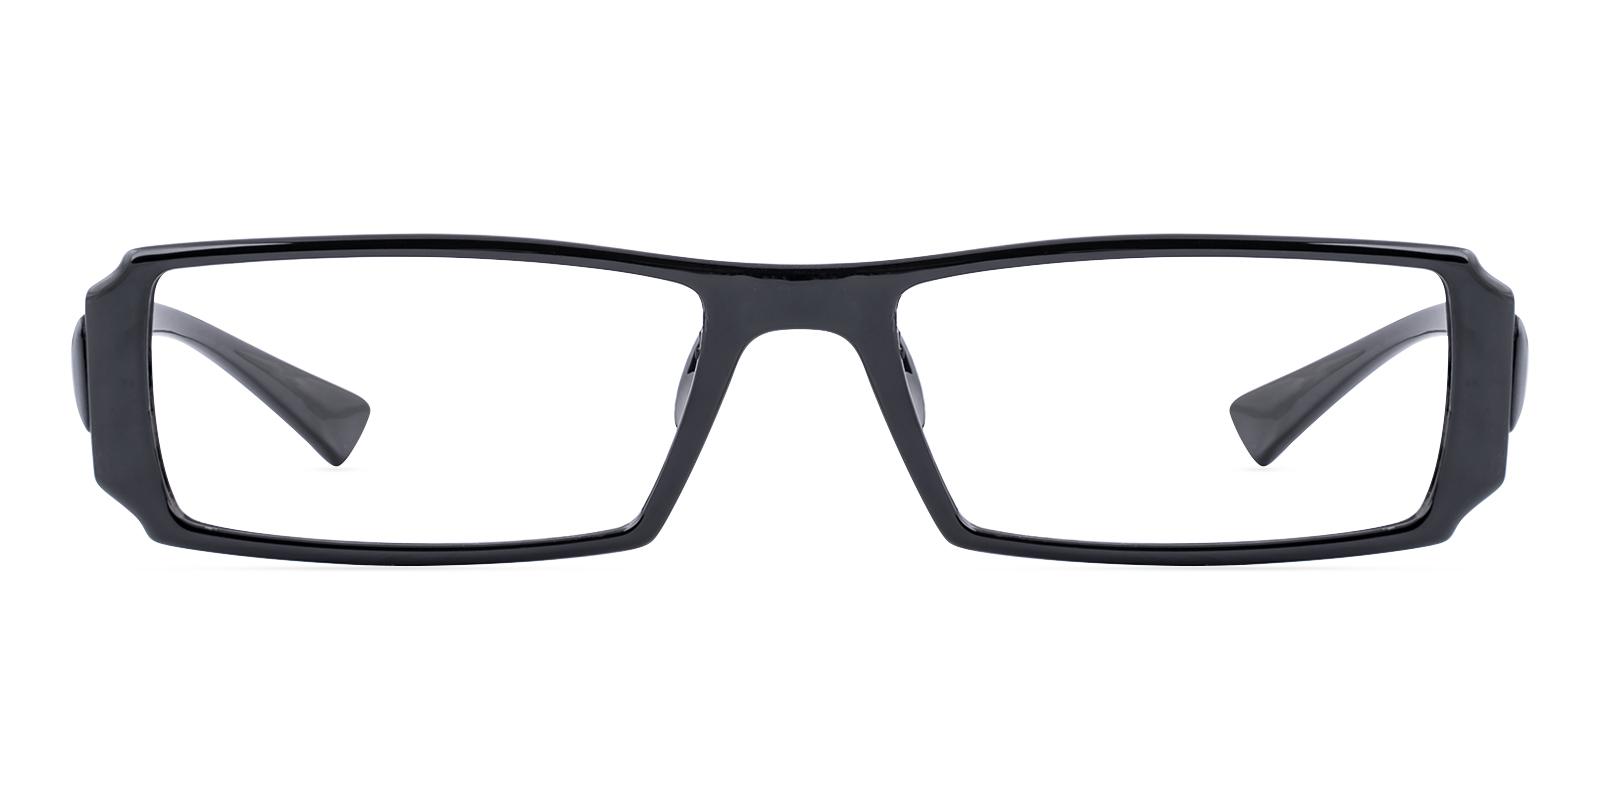 Dorssure Black TR Eyeglasses , Lightweight , UniversalBridgeFit Frames from ABBE Glasses